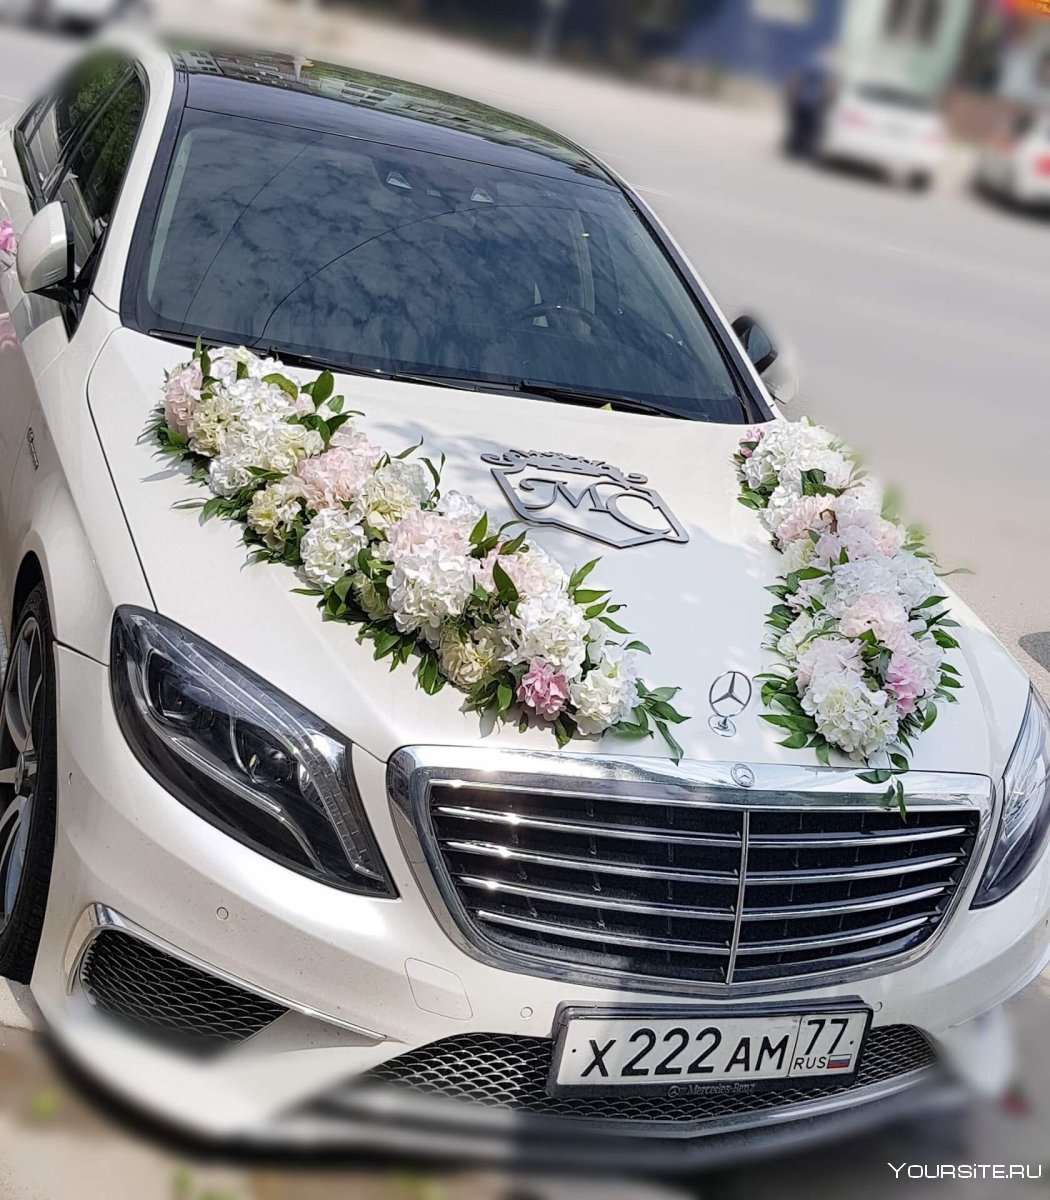 Украшение автомобиля на свадьбу